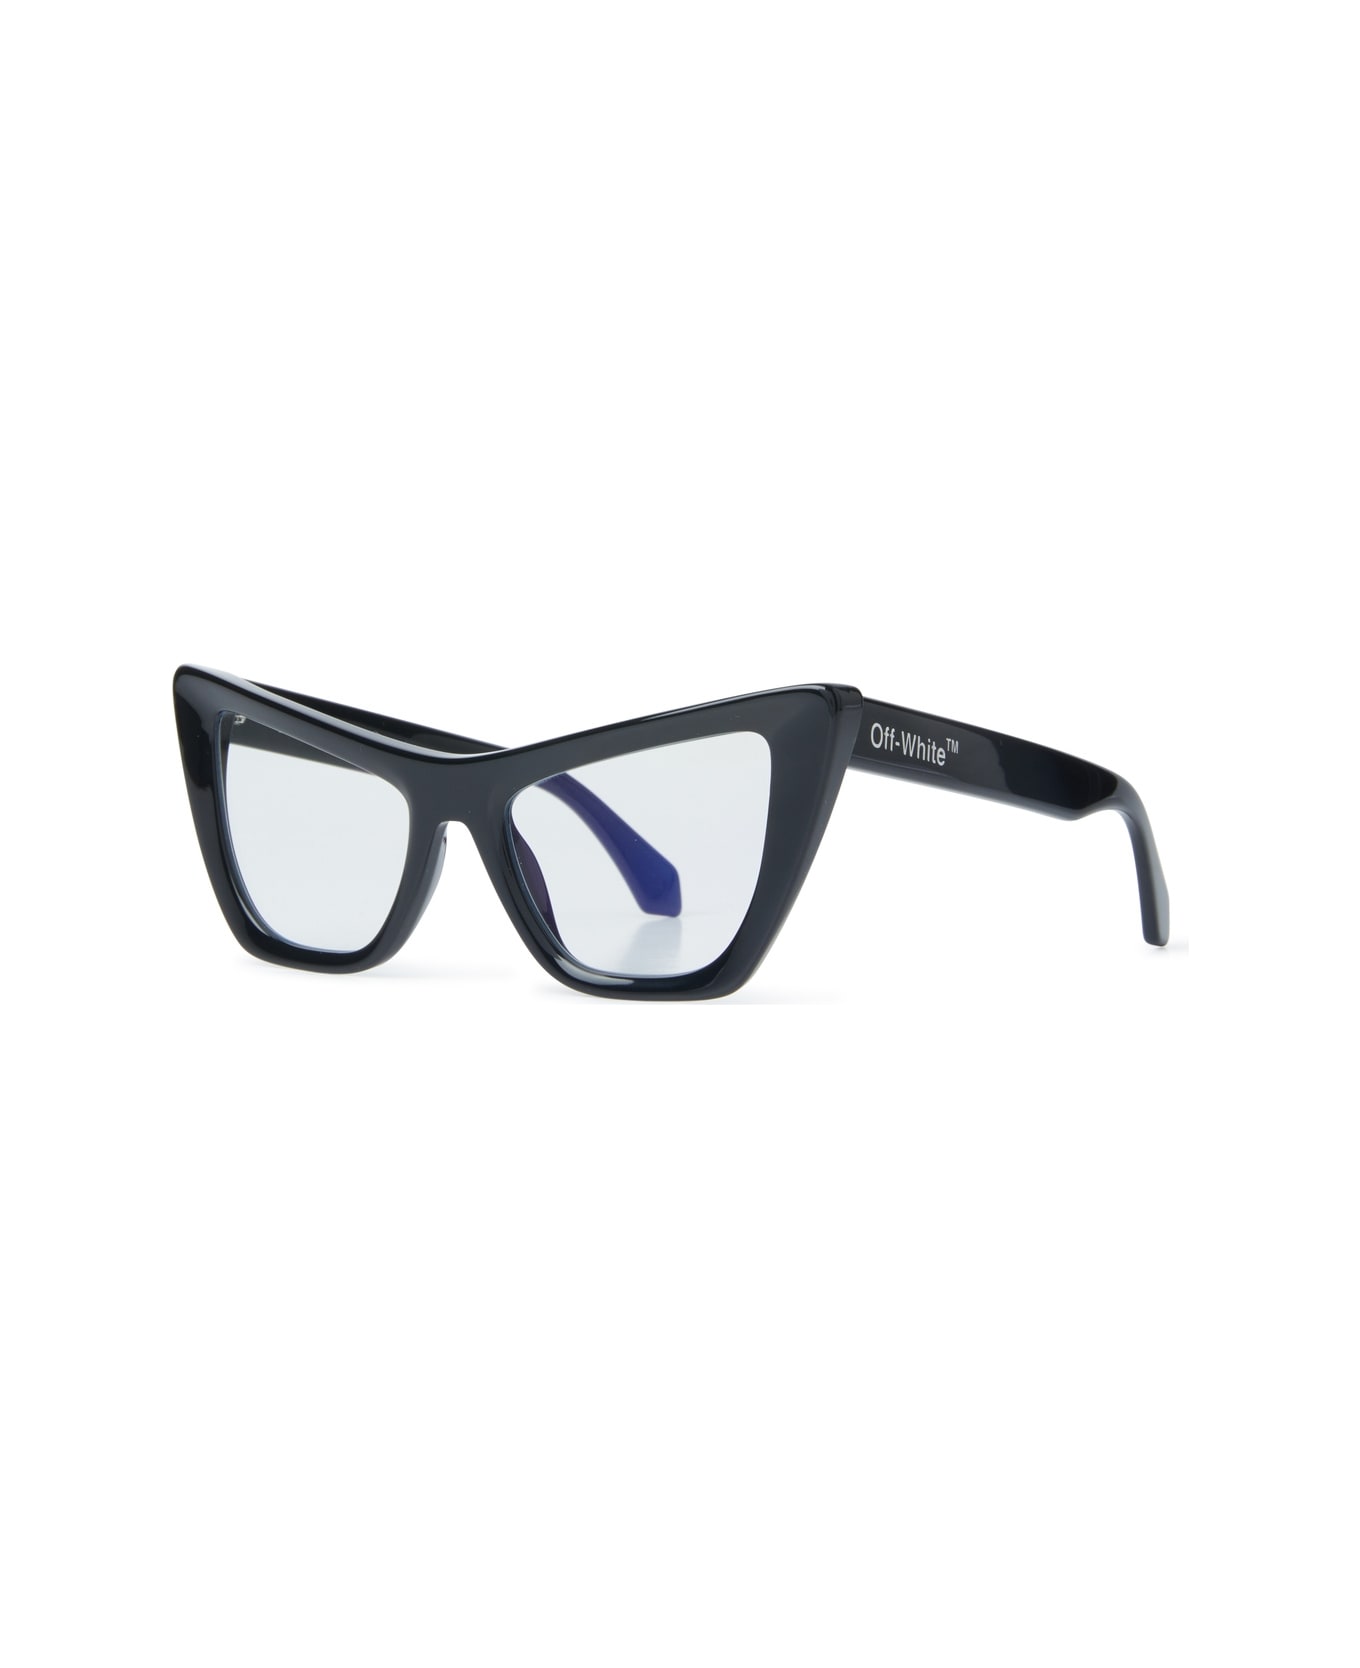 Off-White OPTICAL STYLE 11 Eyewear - Blue